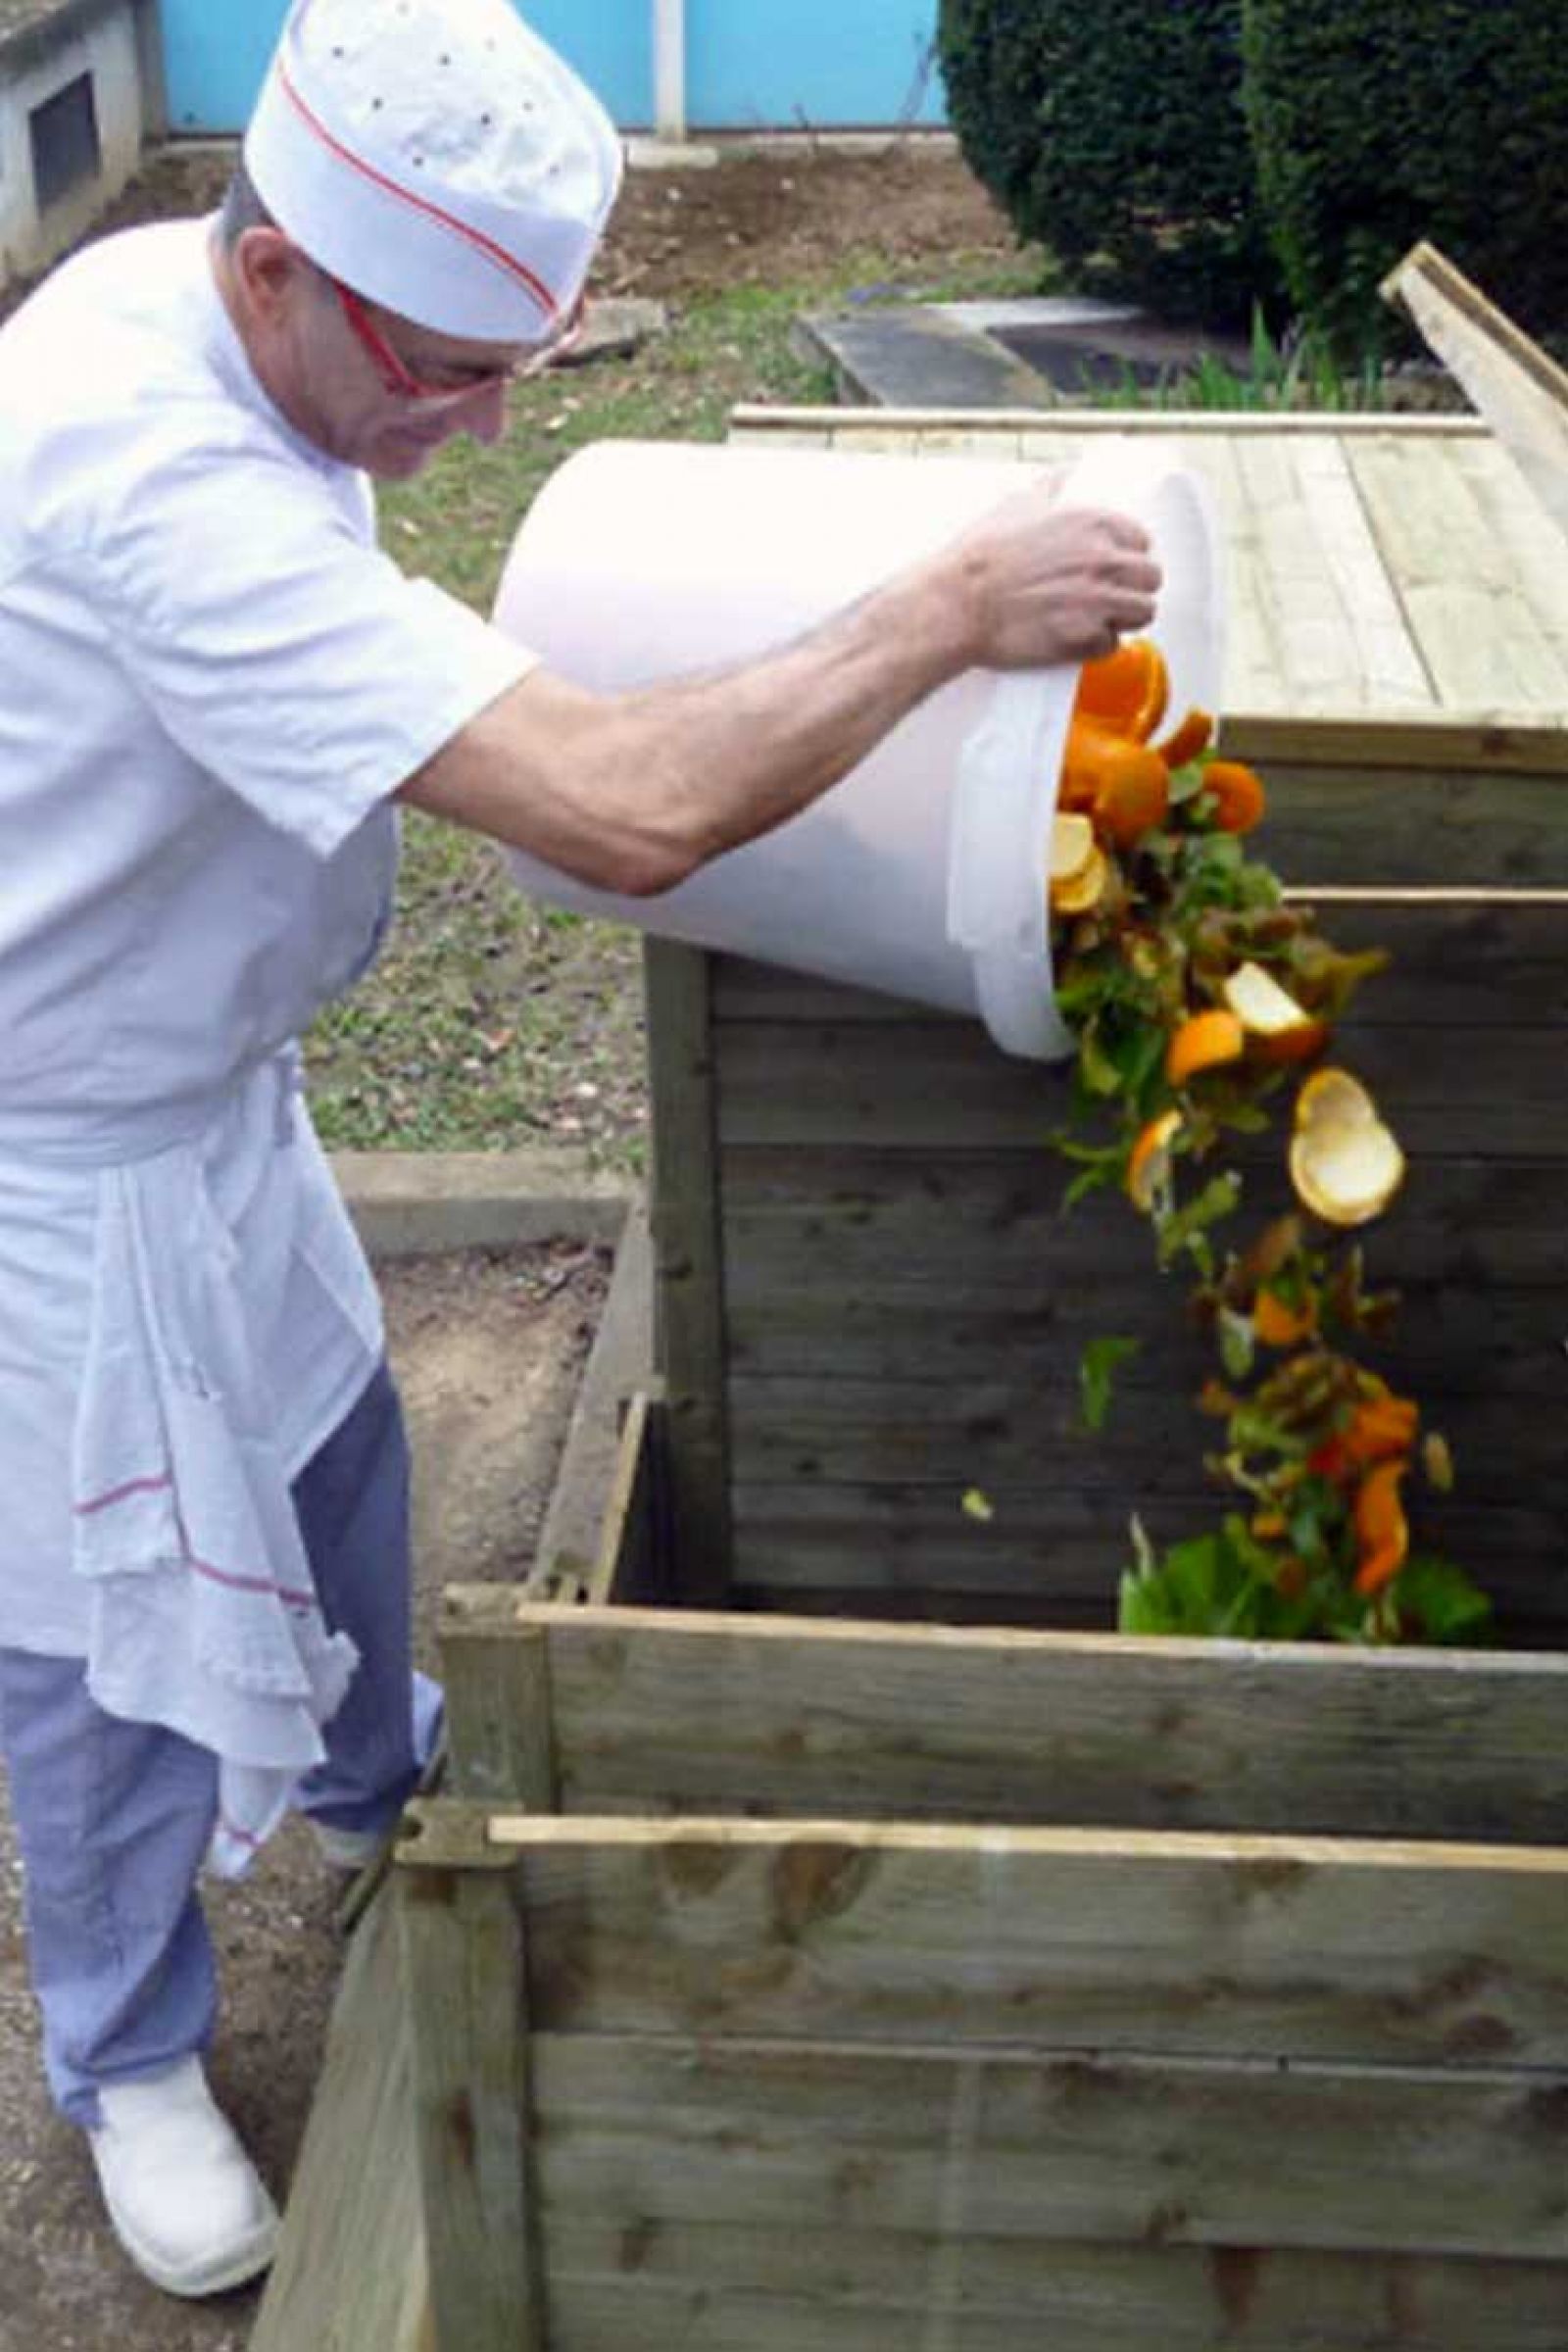 chef cuisinier jeté les bio-déchets, épluchures de fruits et légumes dans le composteur